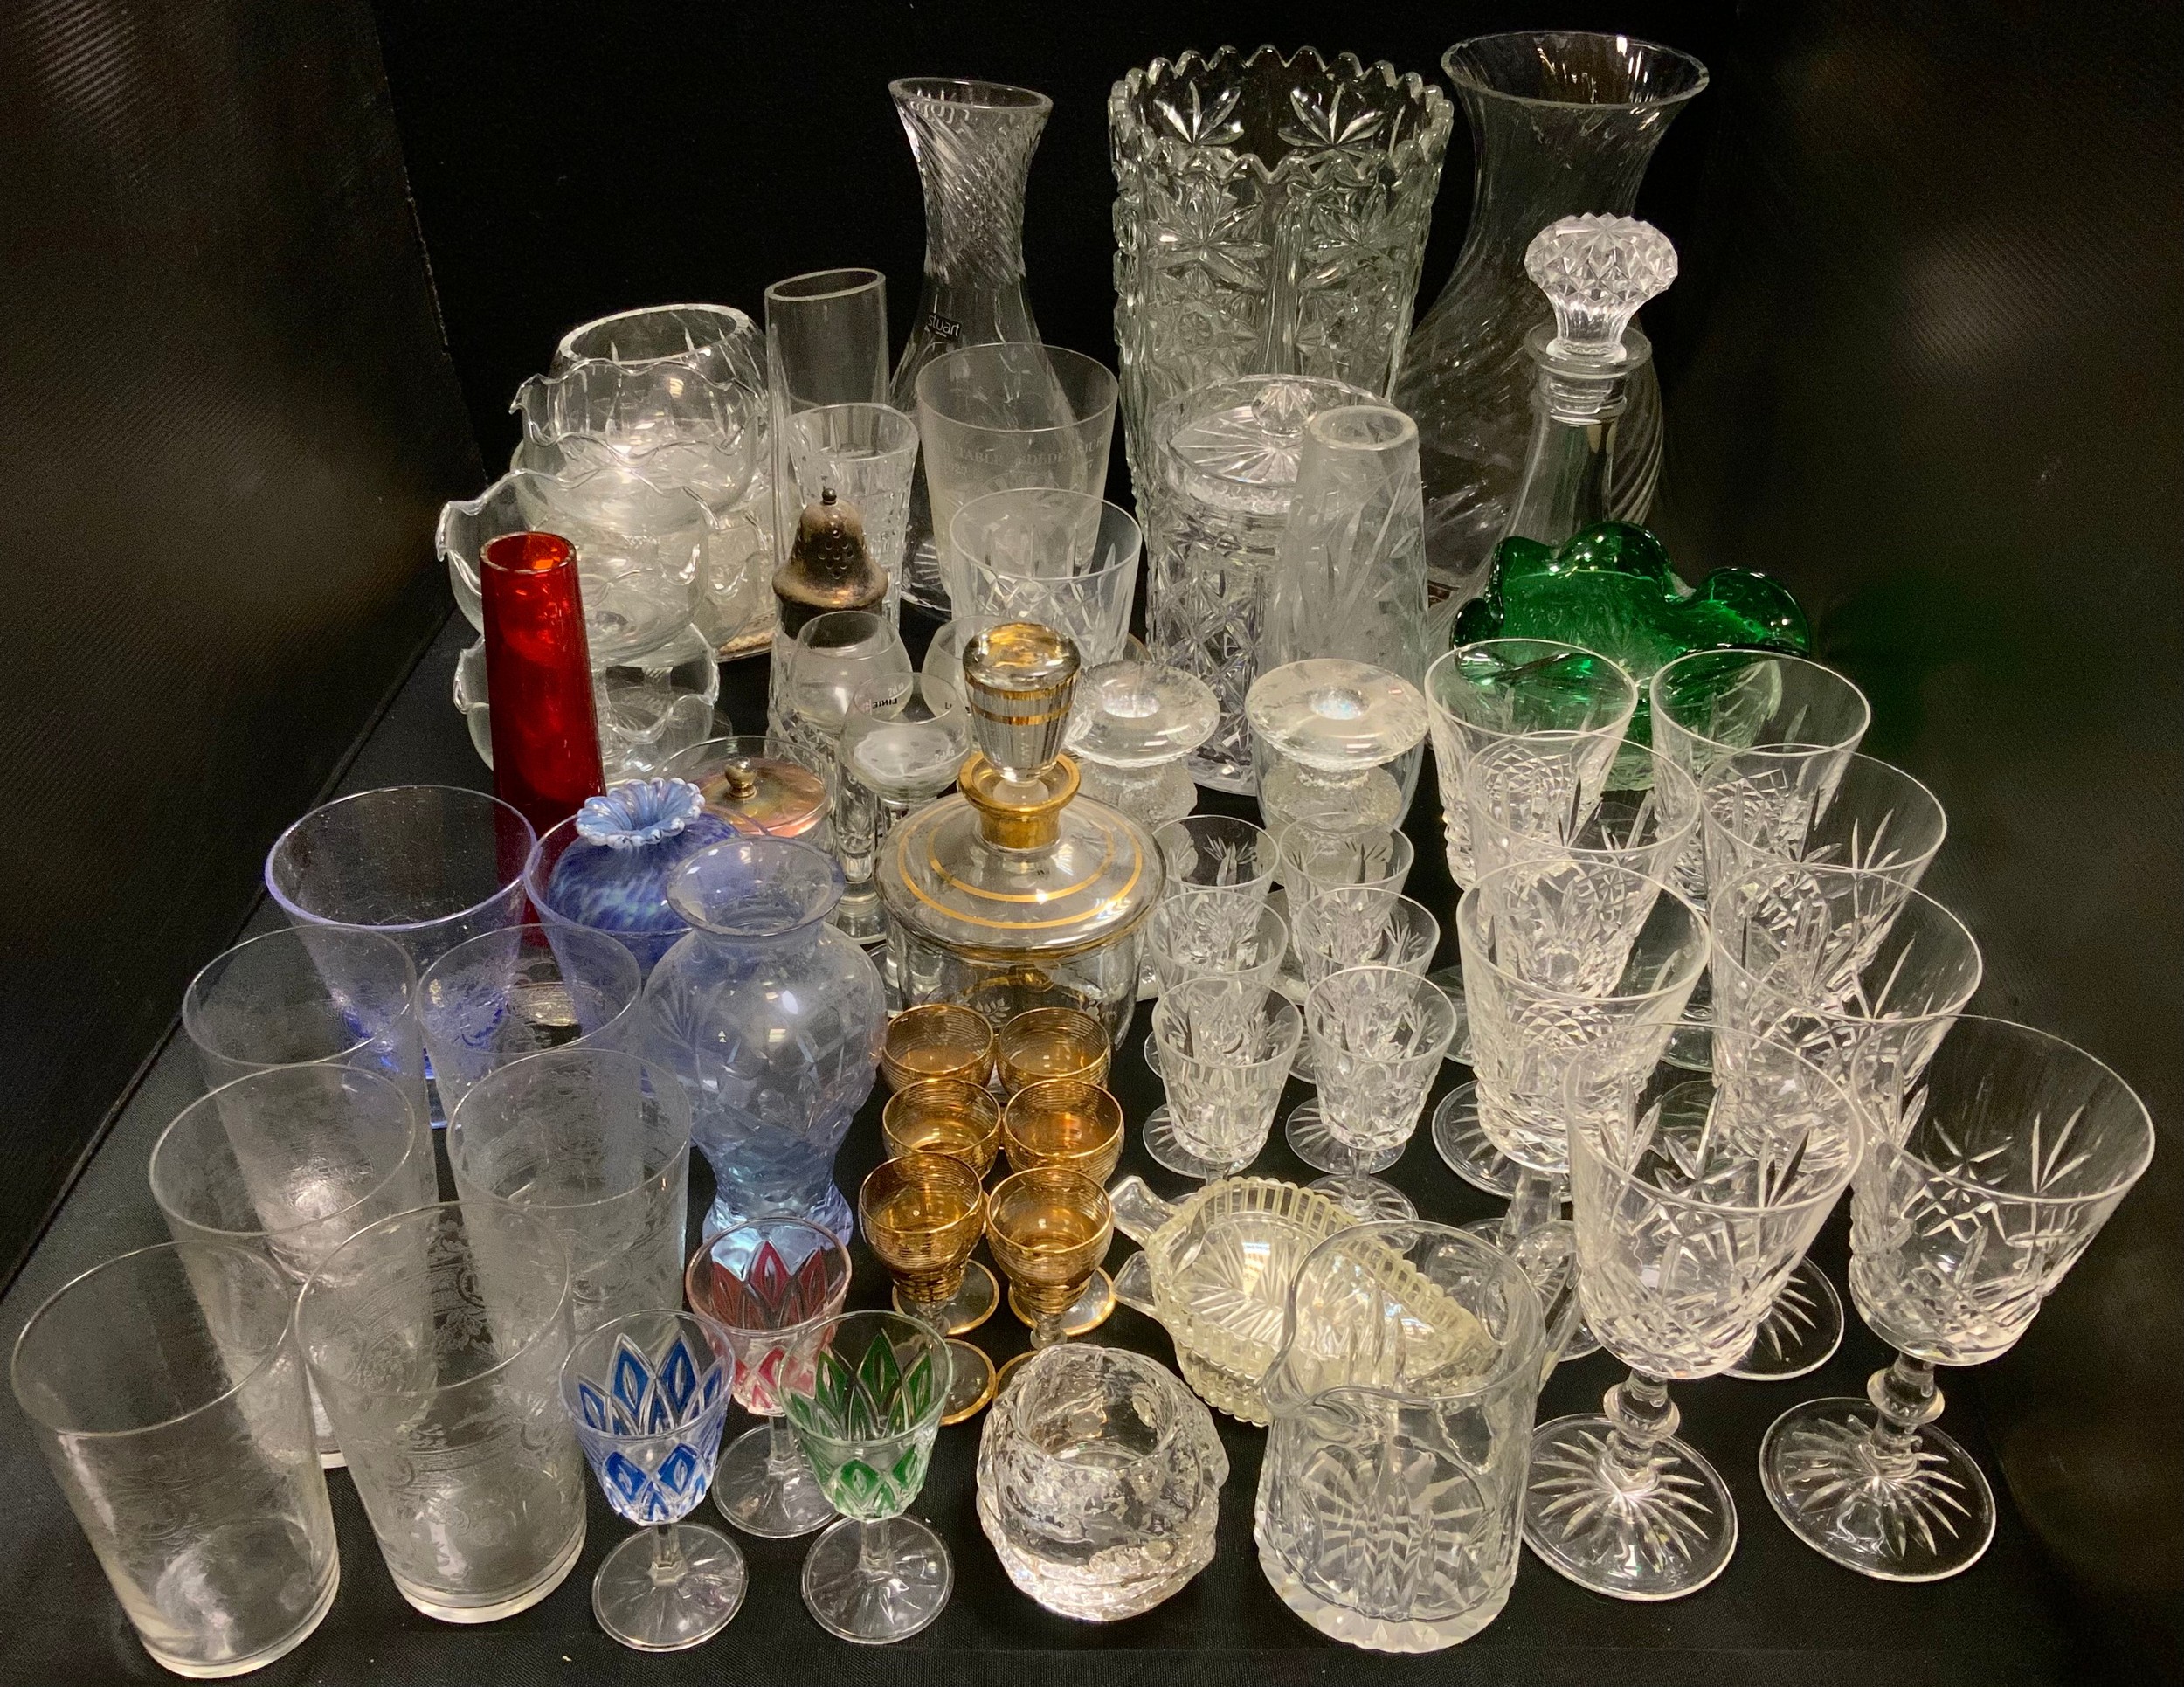 Glassware - a Stuart crystal wine carafe; decanter, vases, stemware; pale blue crackle wine glasses;